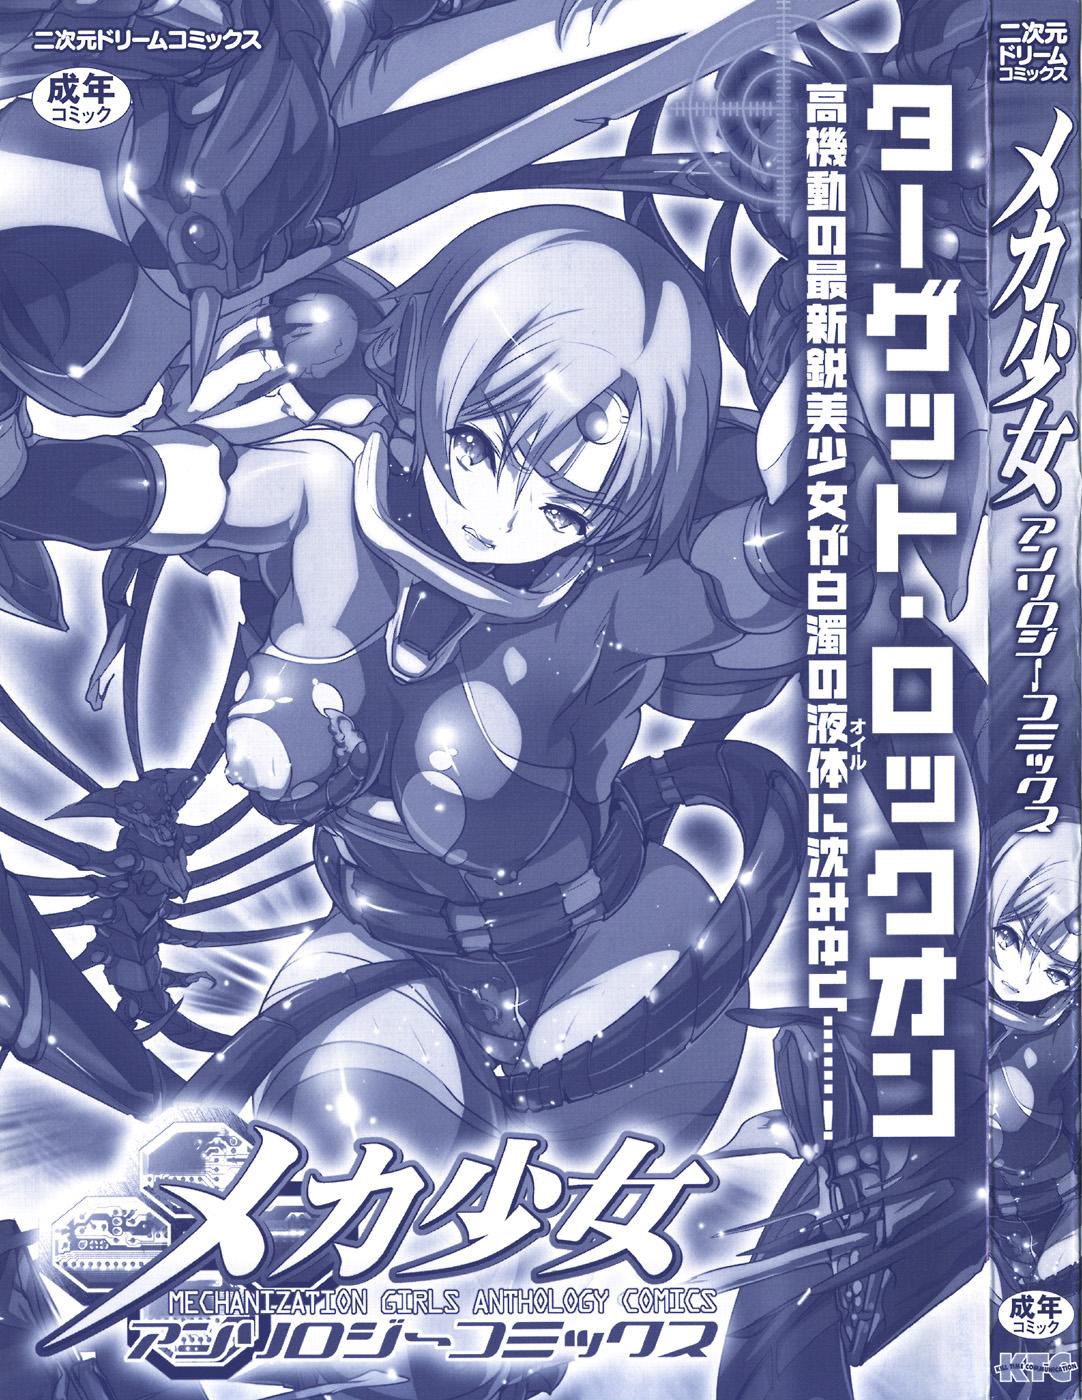 Meka Shoujo Anthology Comics | Mechanization Girls Anthology Comics 1